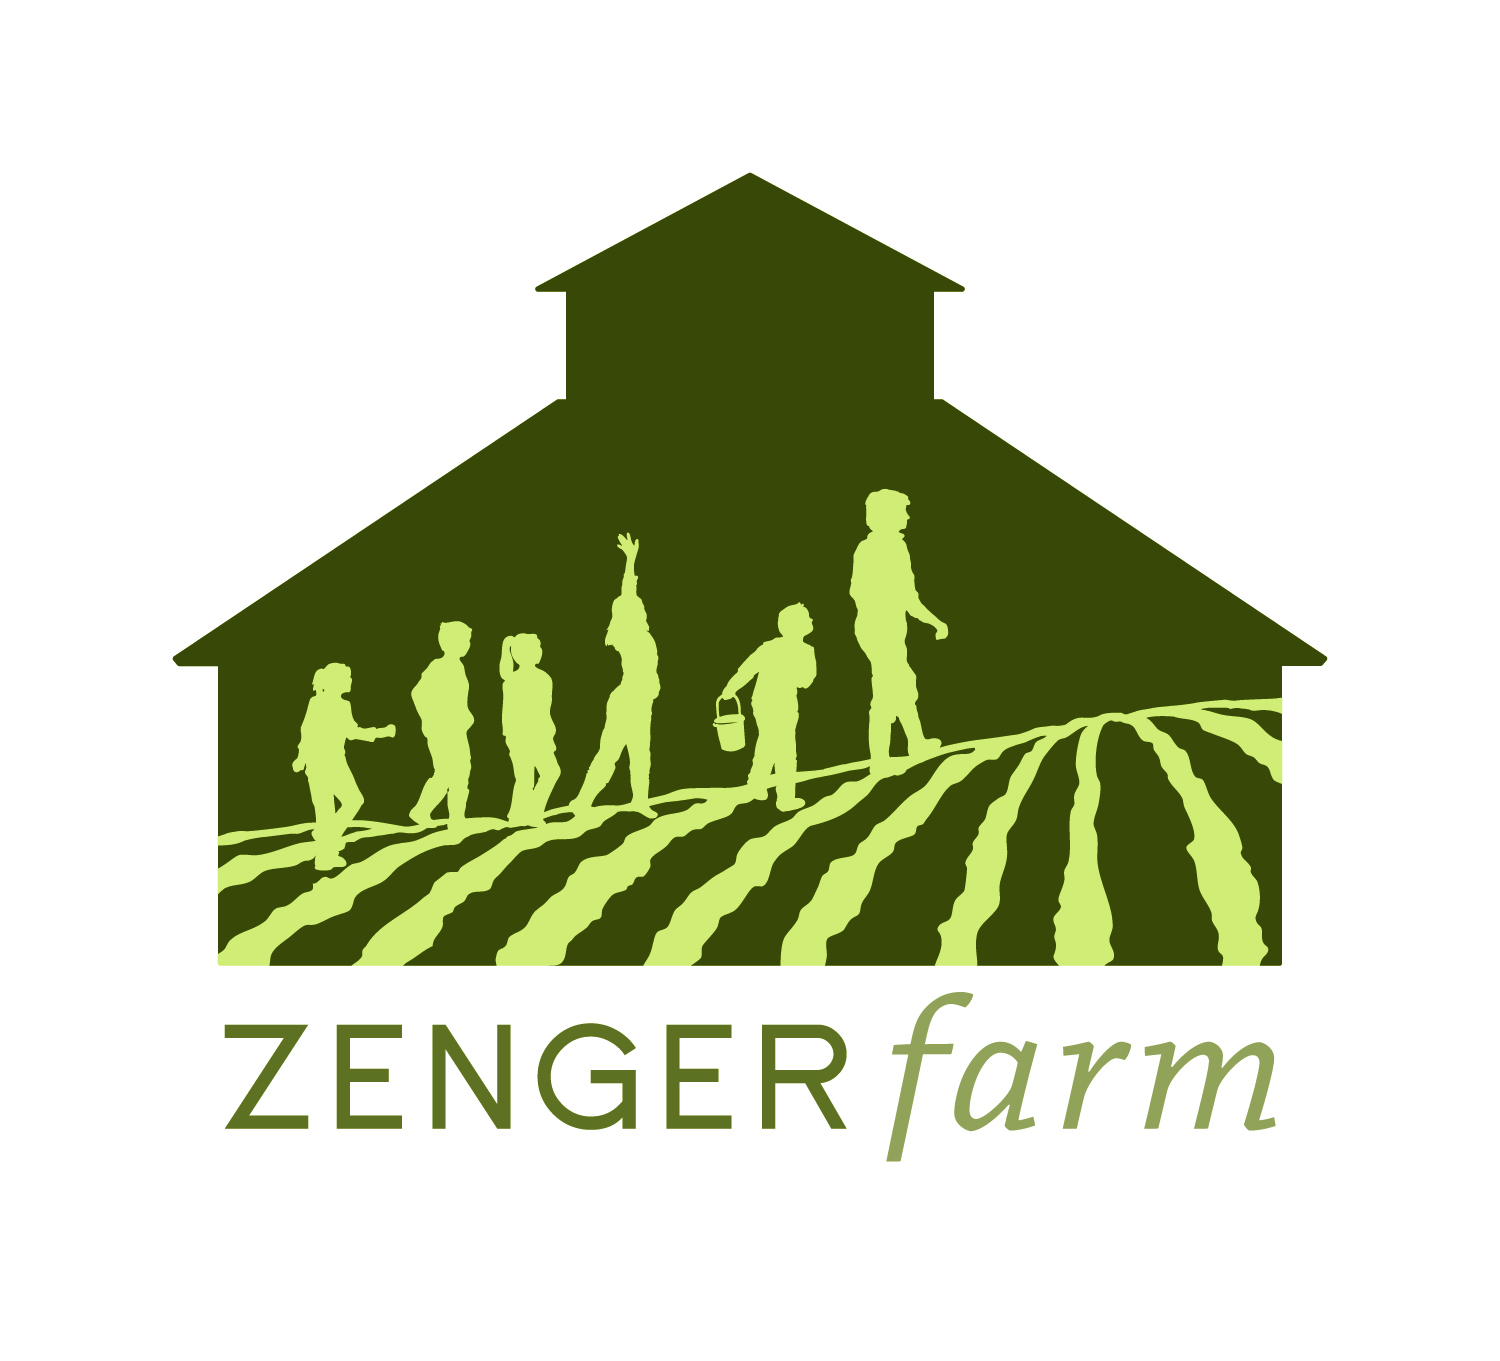 Zenger Farm Summer Camp